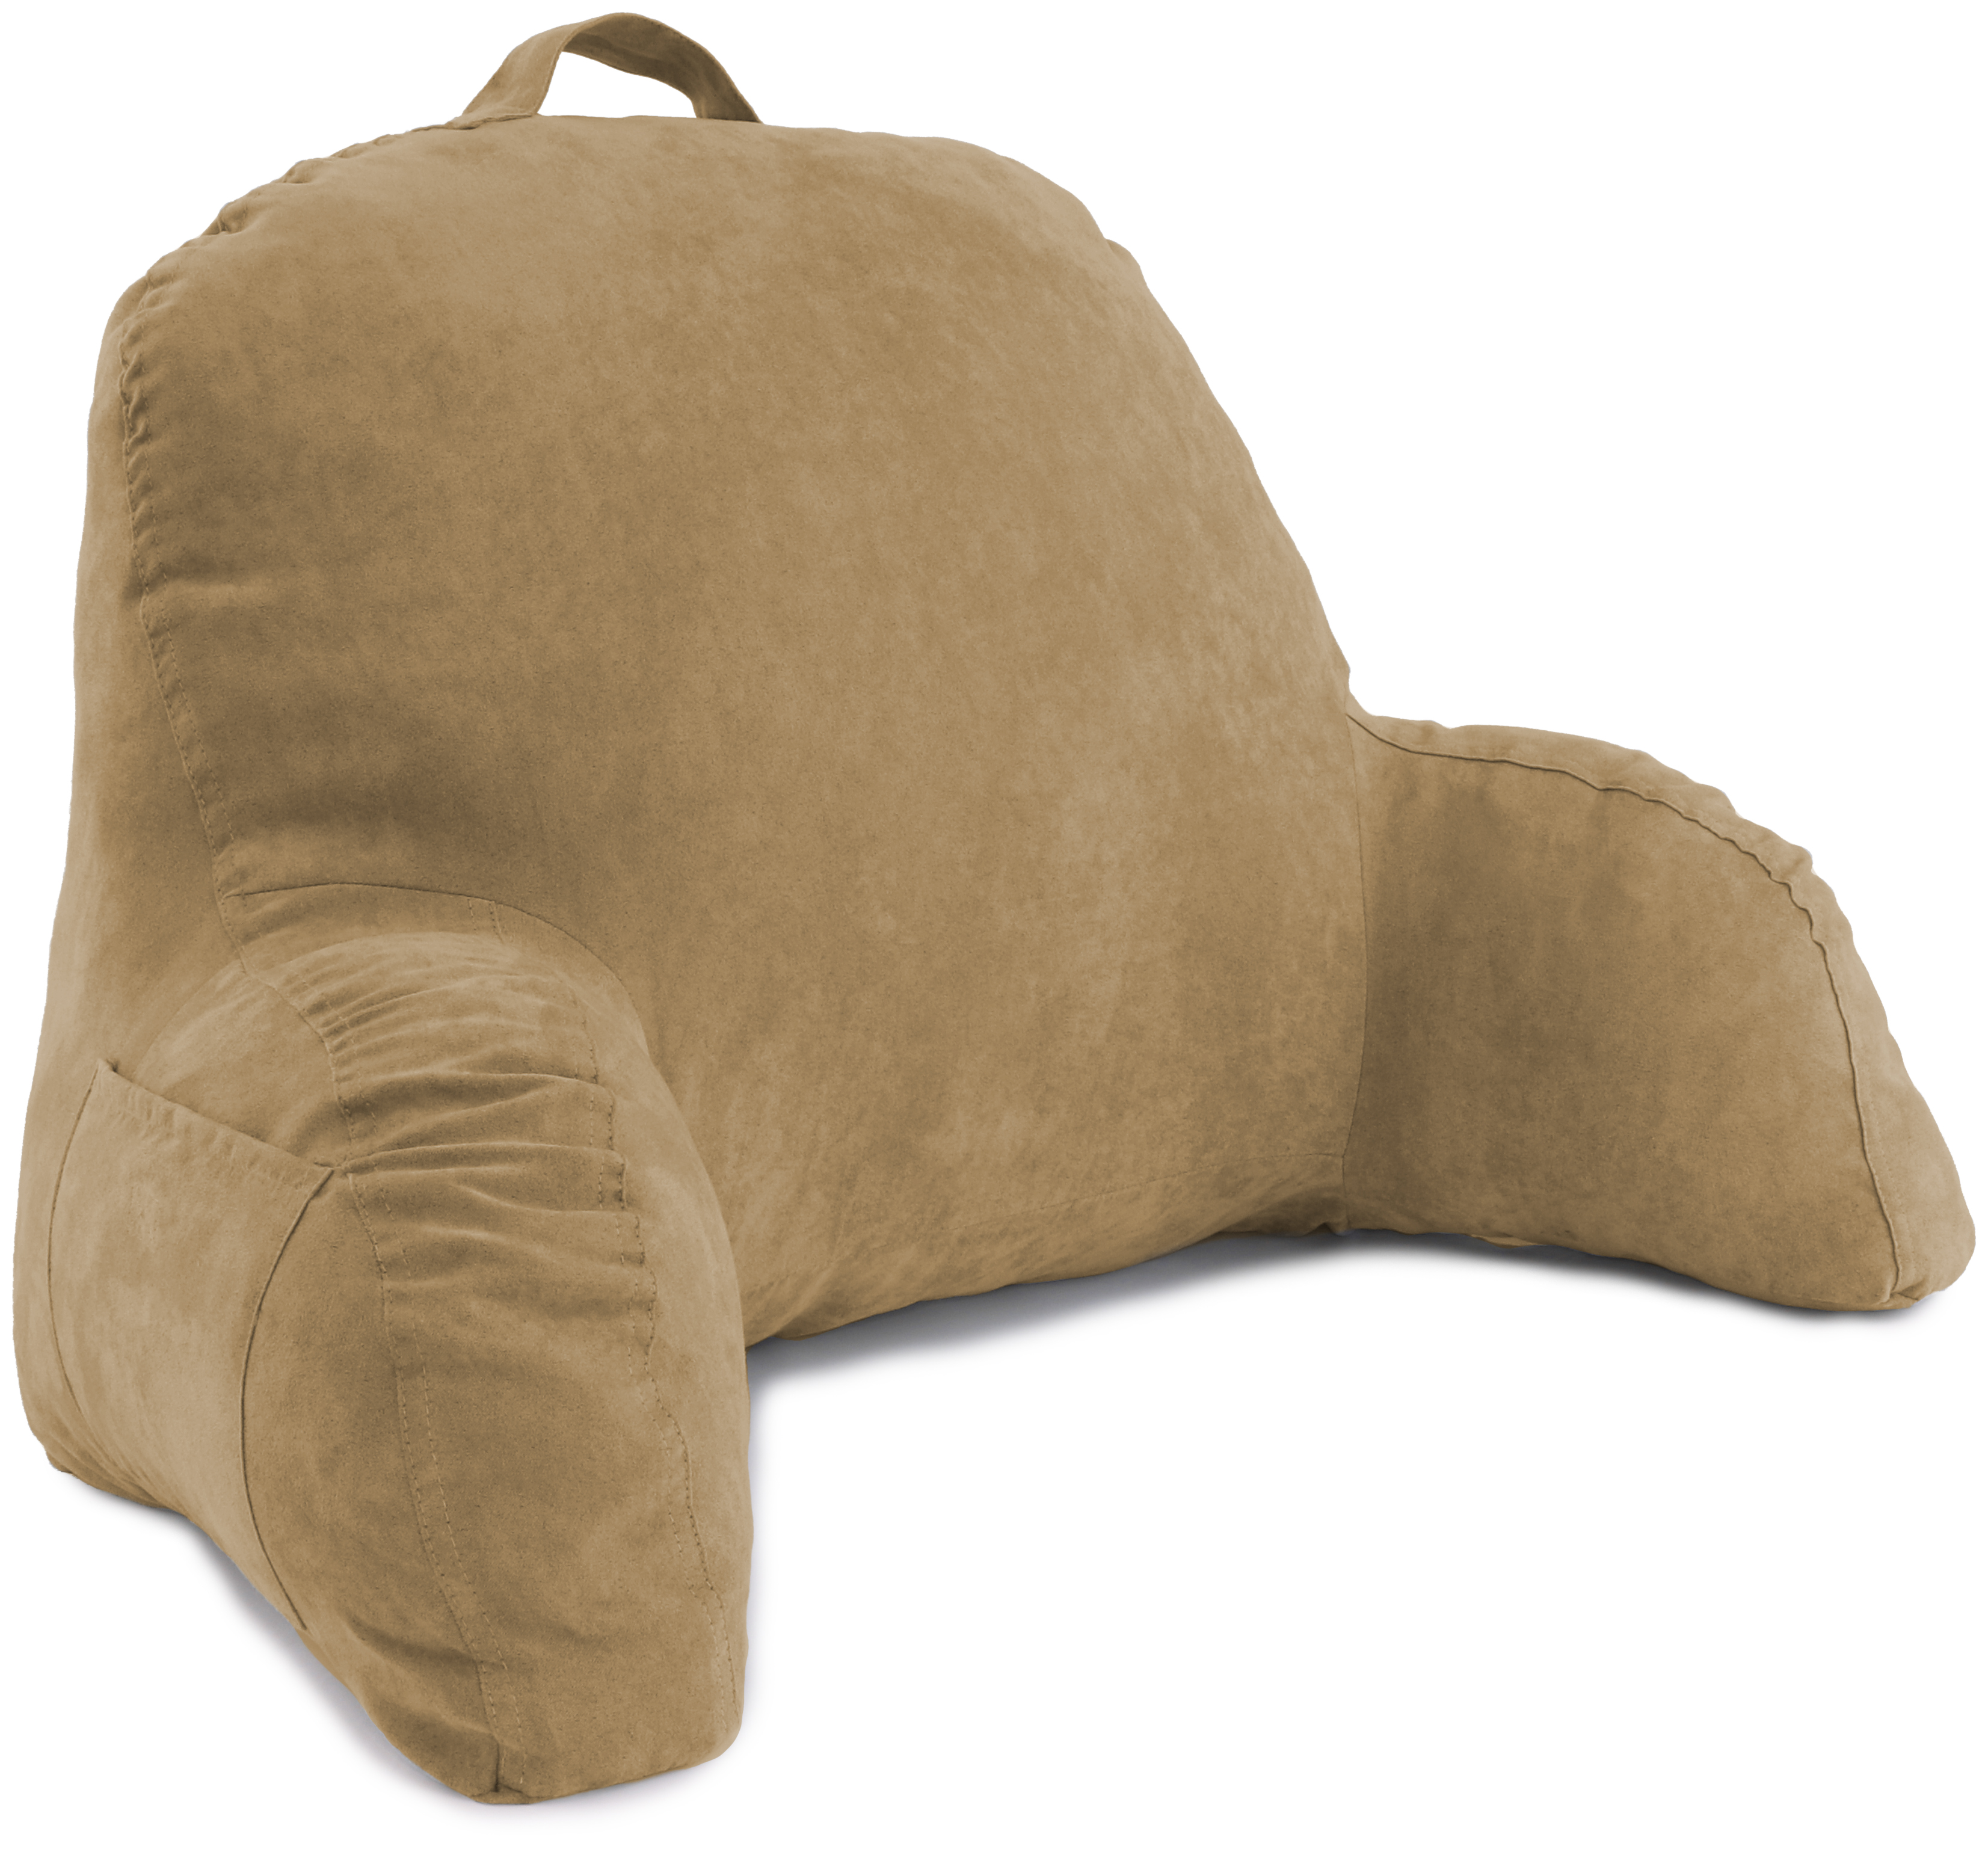 Deluxe Comfort Microsuede Bed Rest Pillow